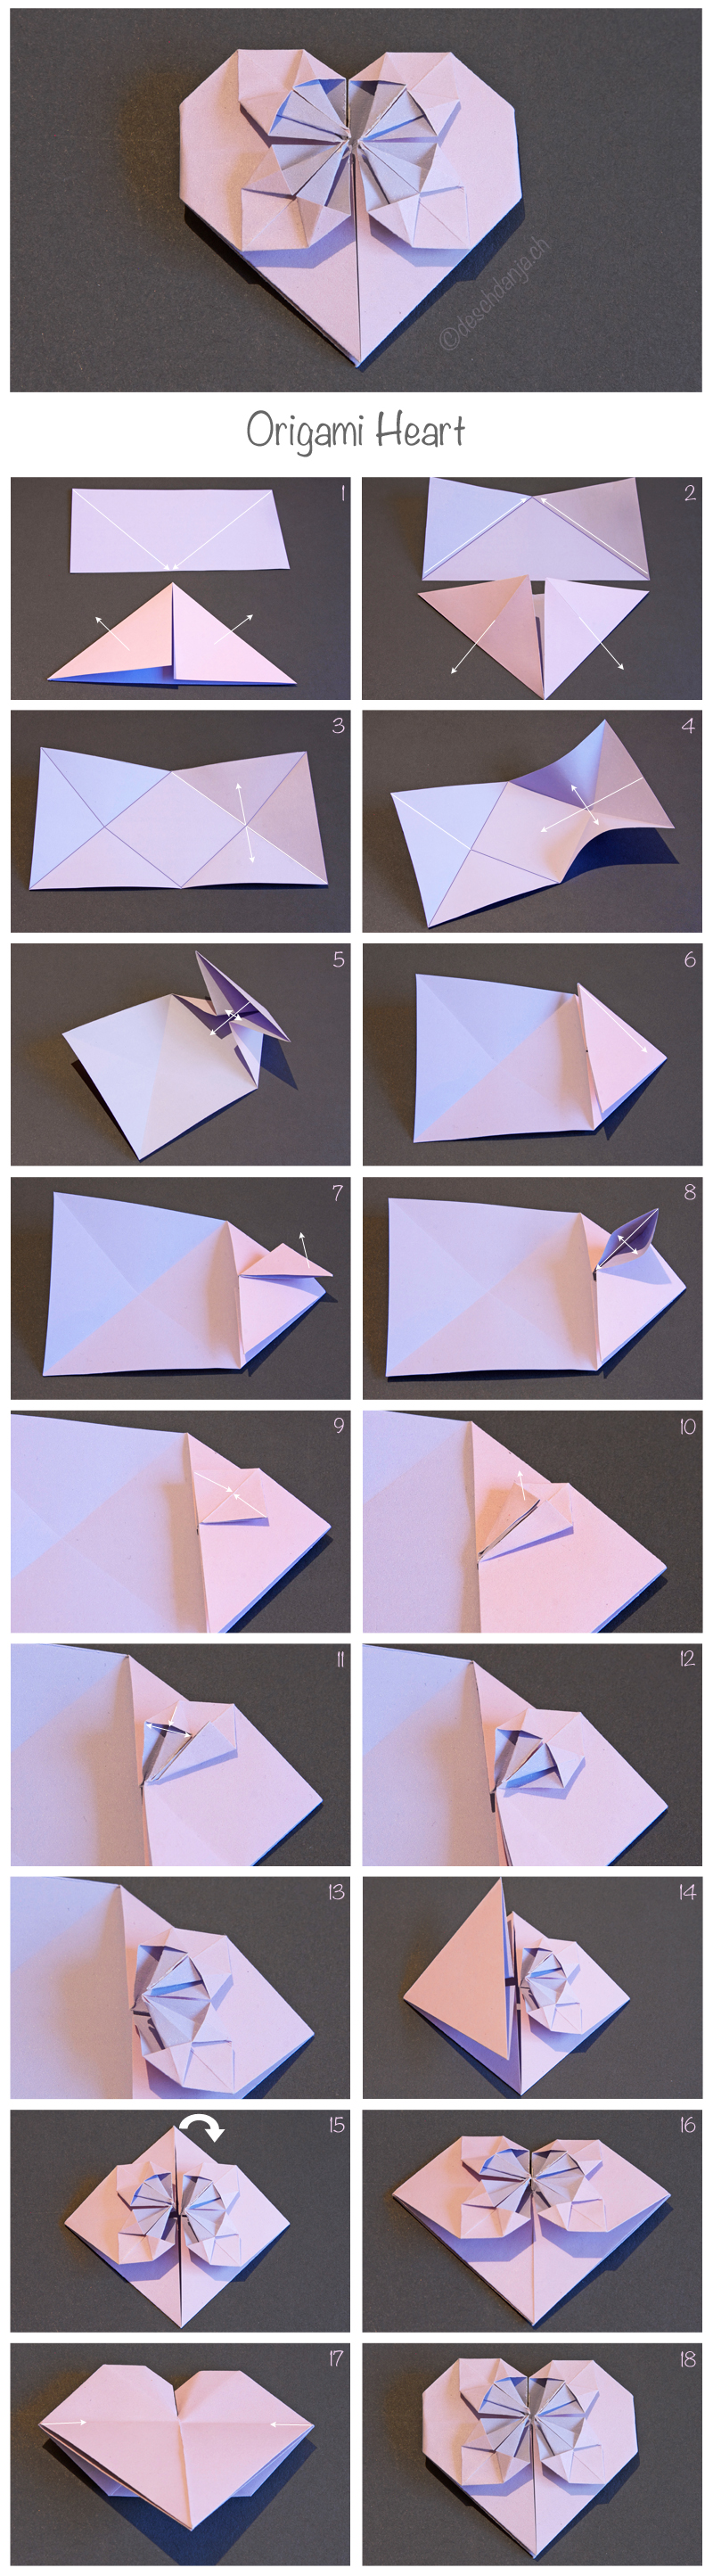 origami herz  deschdanjach